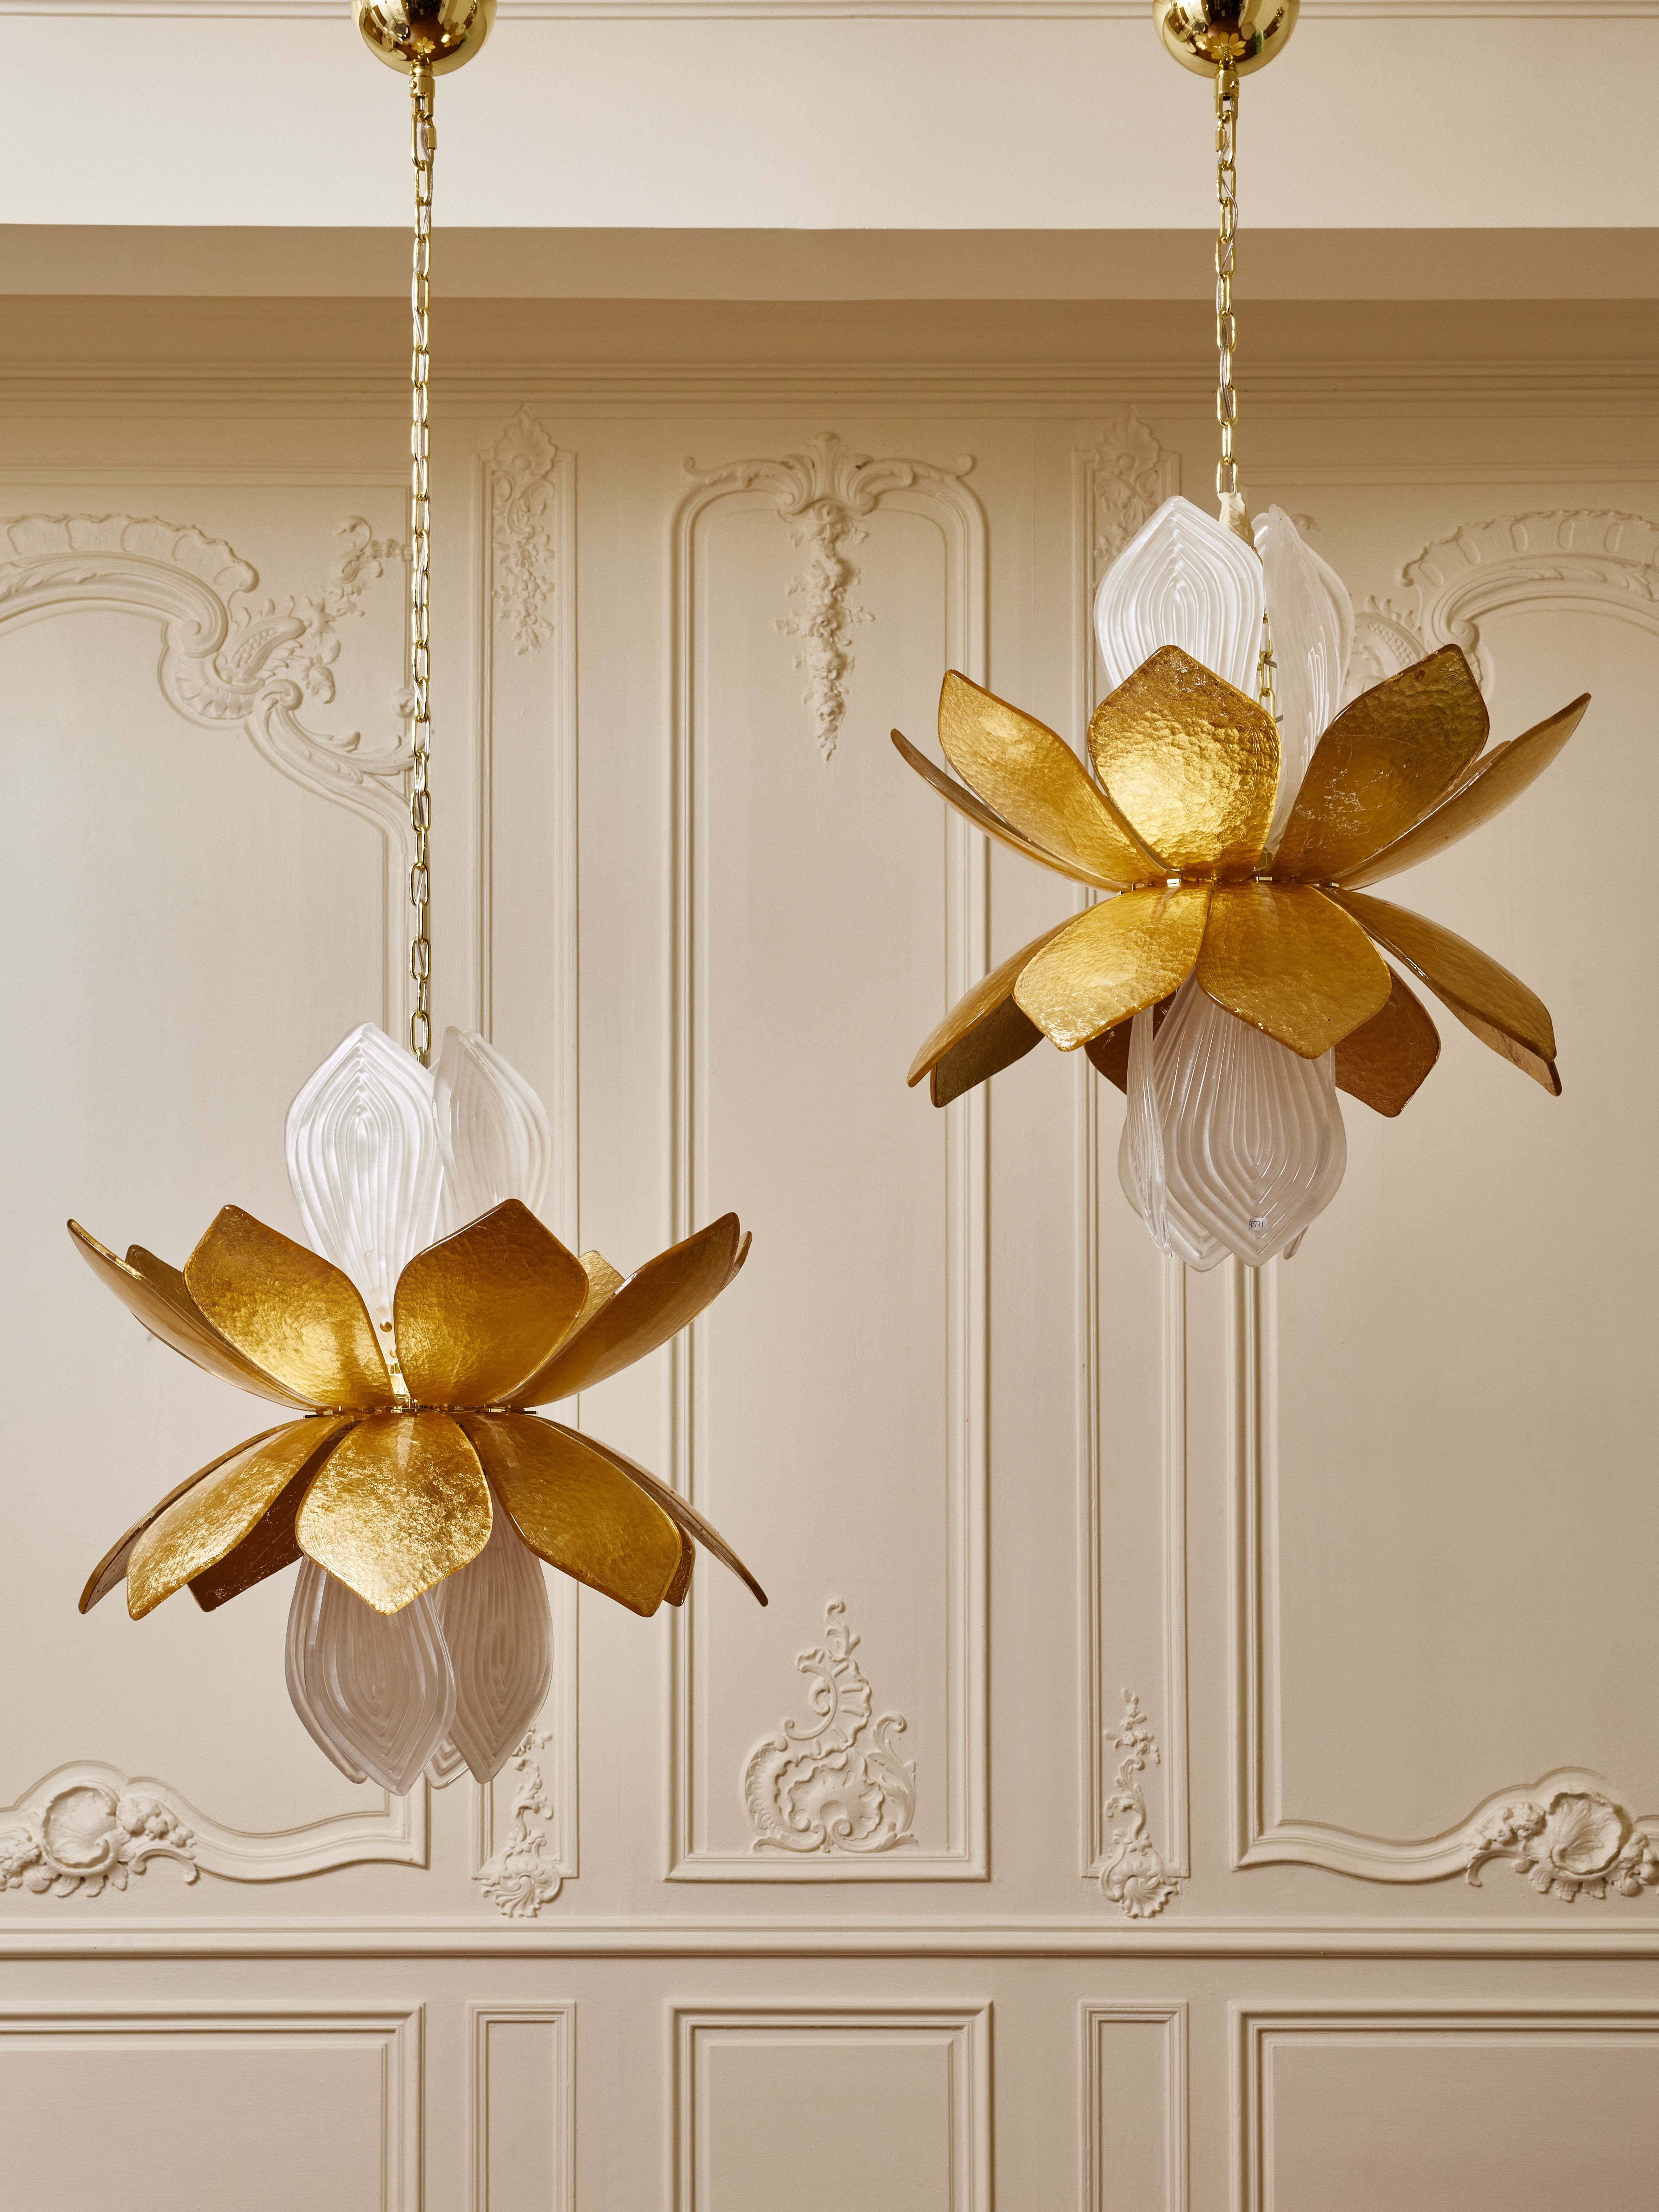 Superbe lampe suspendue en laiton et verre de Murano avec feuille d'or.
Hauteur réglable.
Création par le Studio Glustin.

Le prix est pour une pièce.